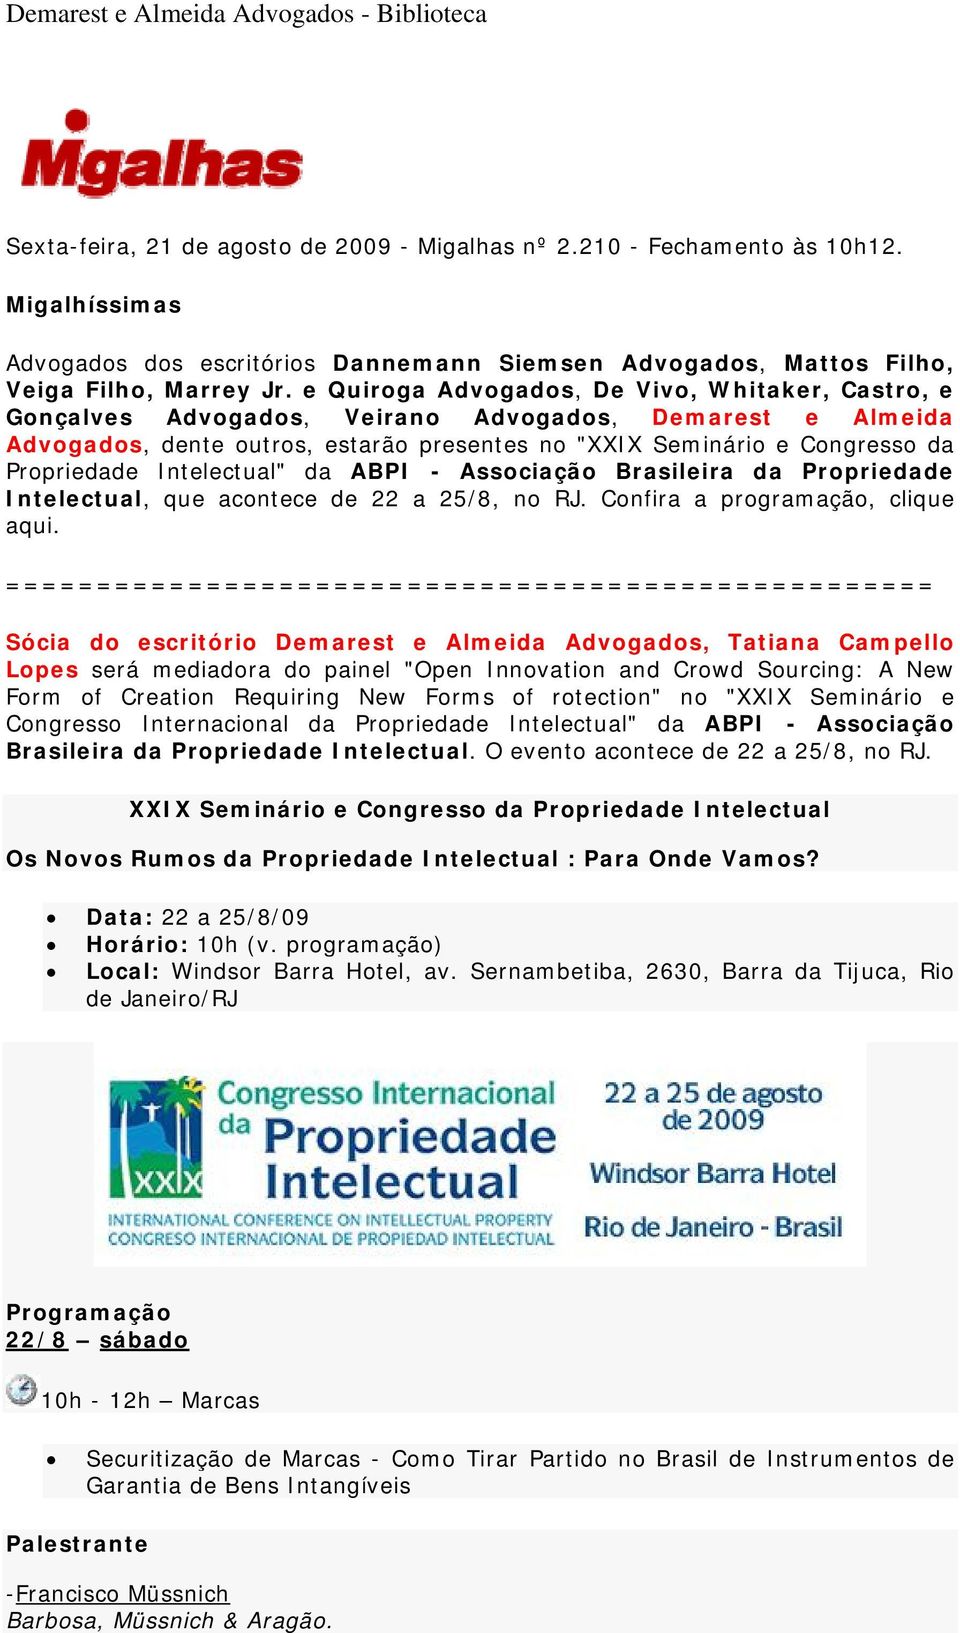 Intelectual" da ABPI - Associação Brasileira da Propriedade Intelectual, que acontece de 22 a 25/8, no RJ. Confira a programação, clique aqui.